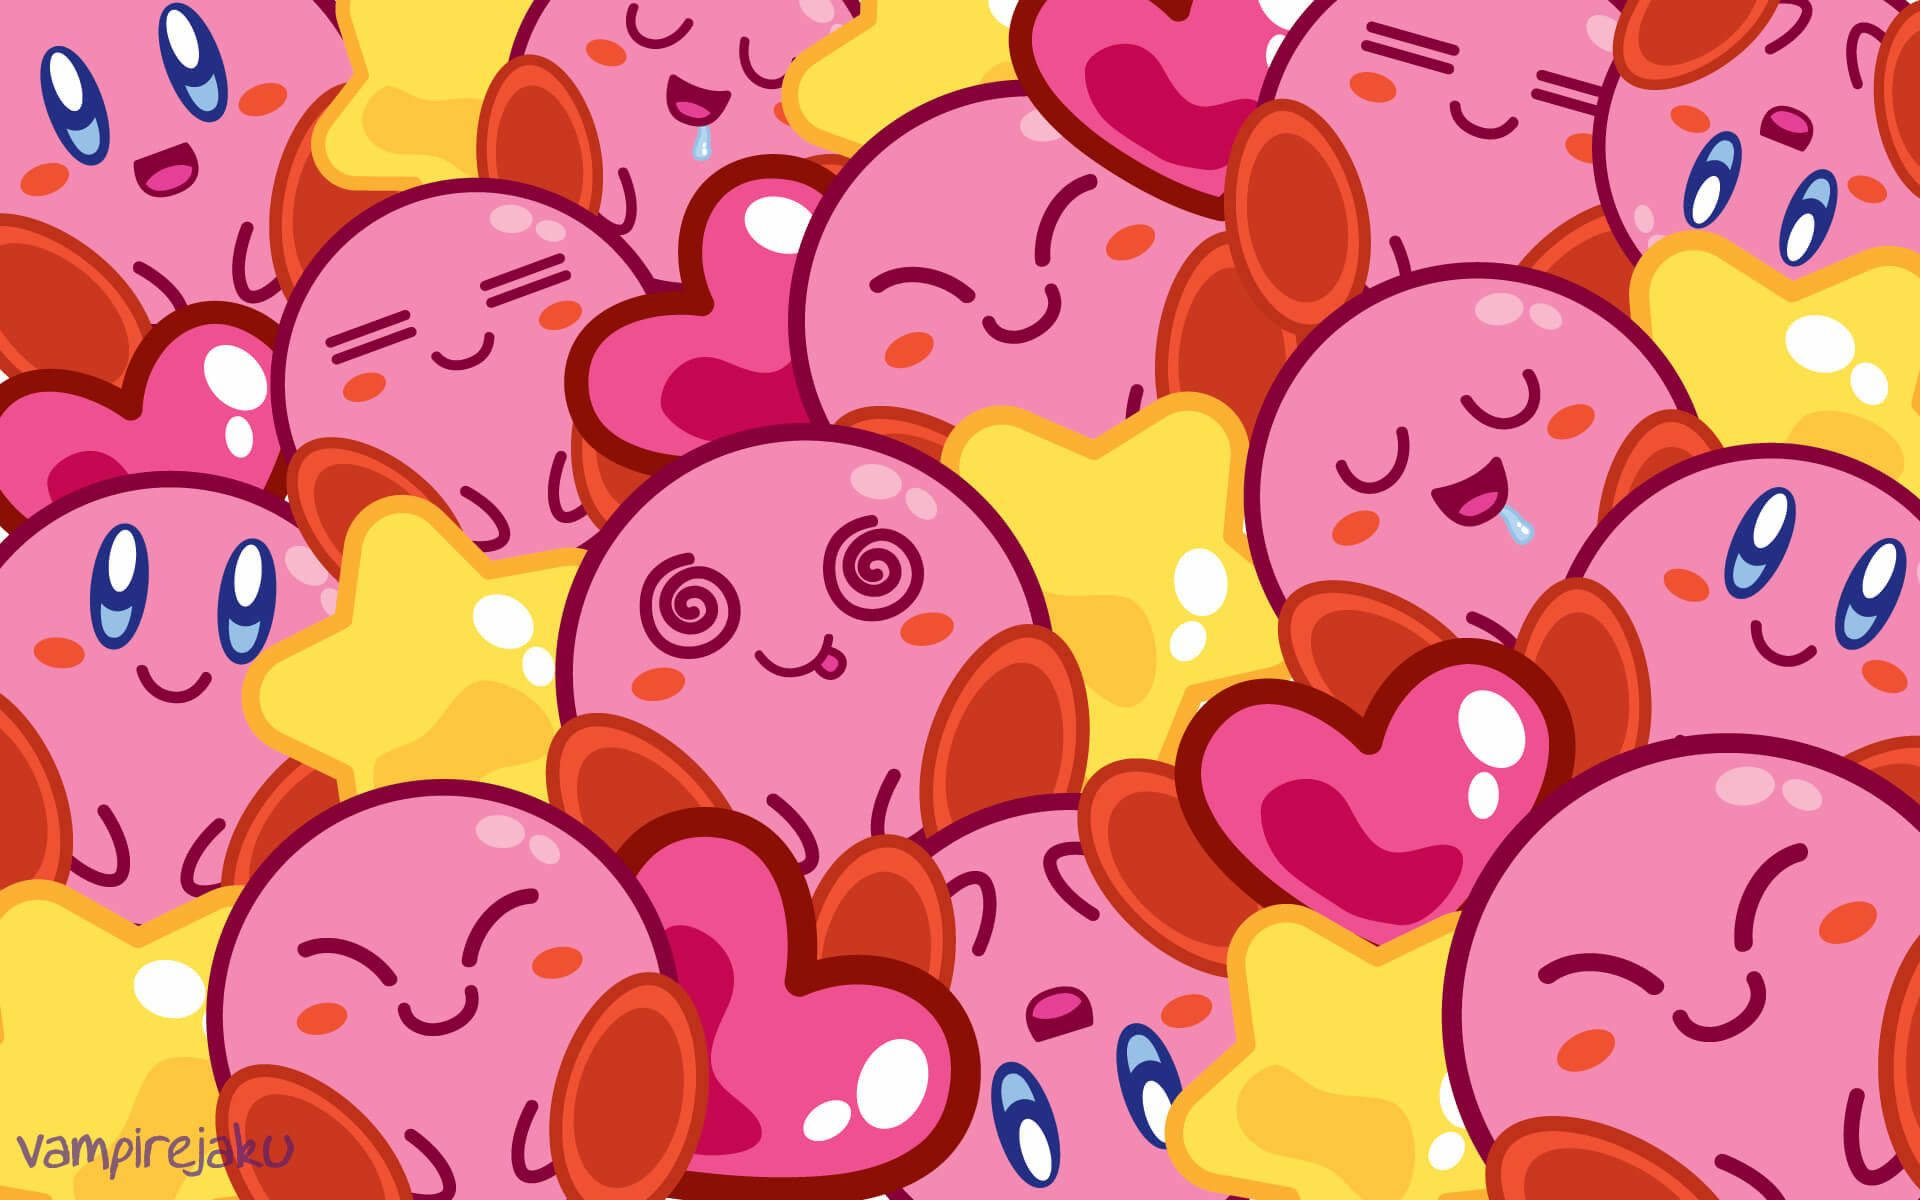 Cute HD quality fan art wallpaper of Kirby